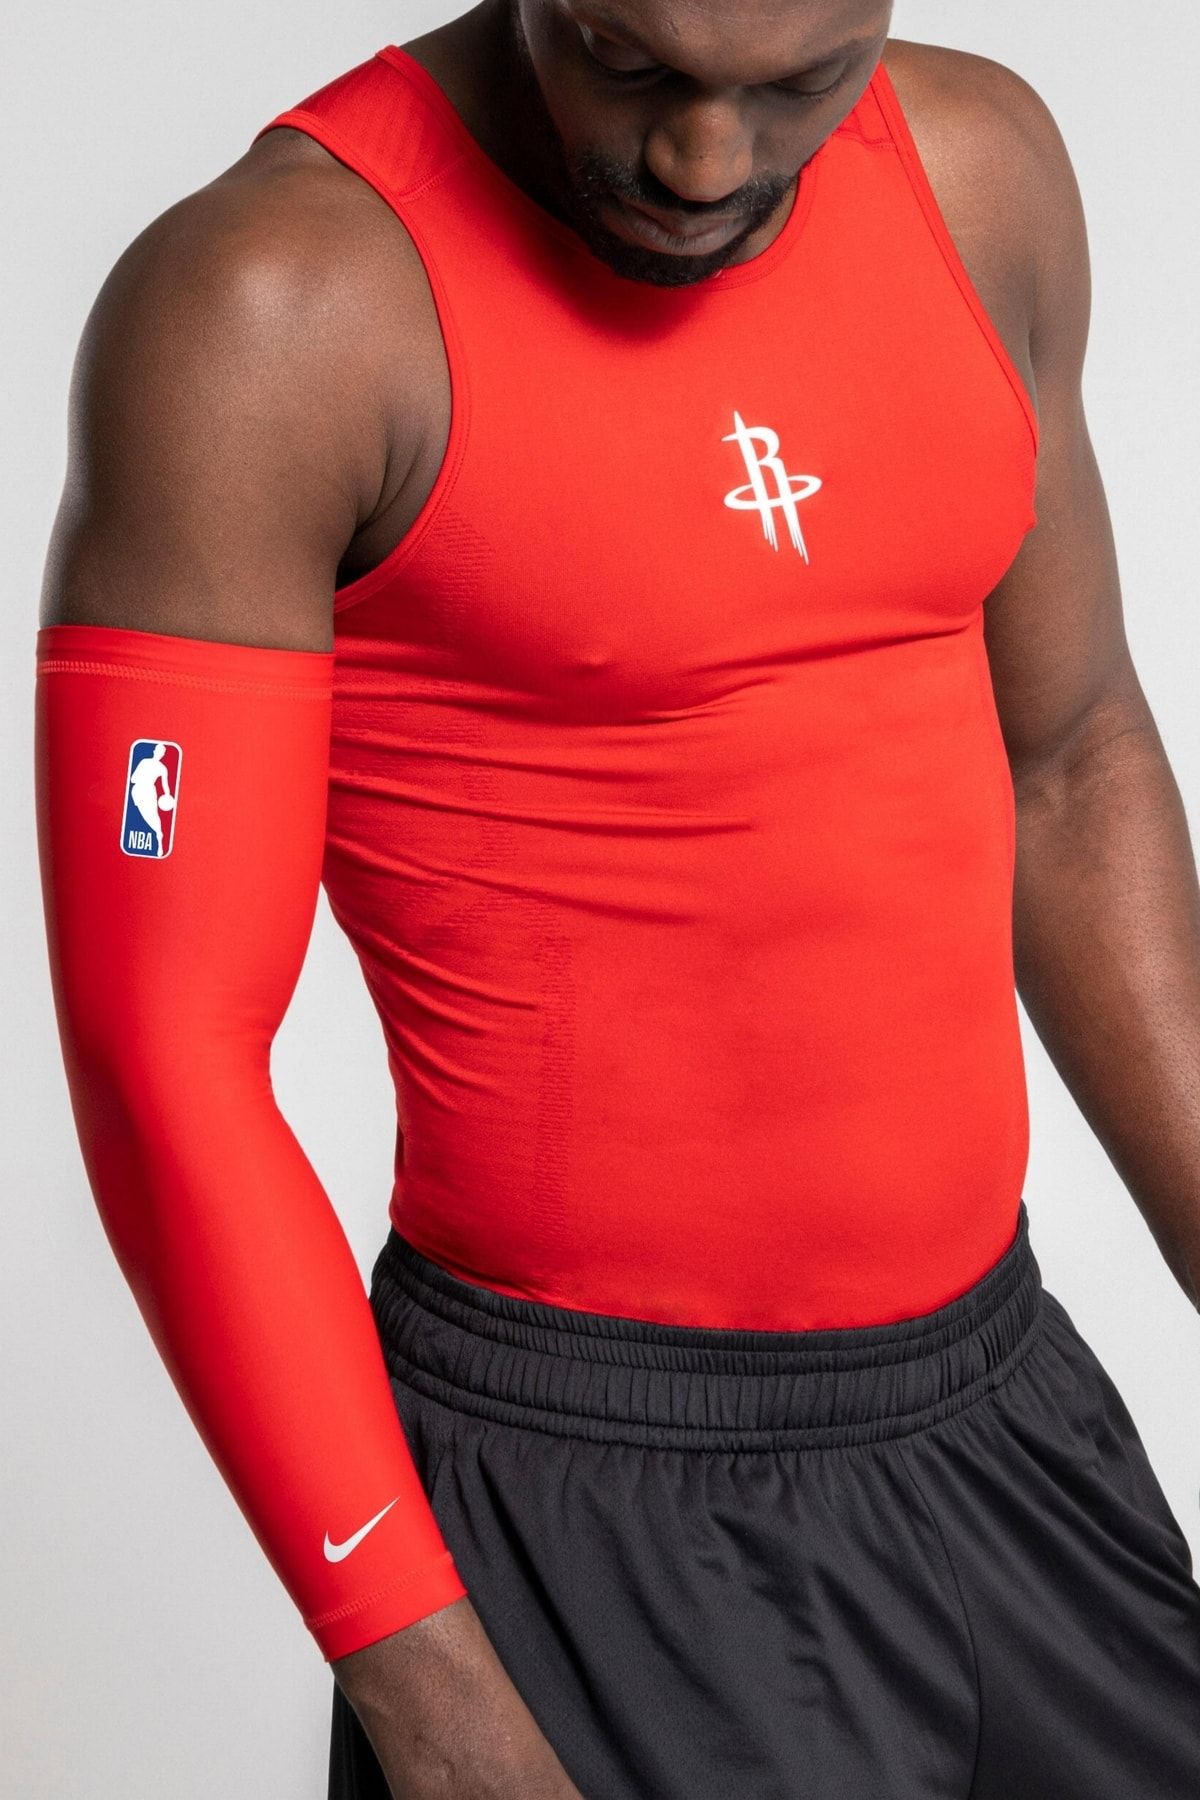 Nike Shooter - X3 Basketbol Kolluk 2,0 Kırmızı S / M